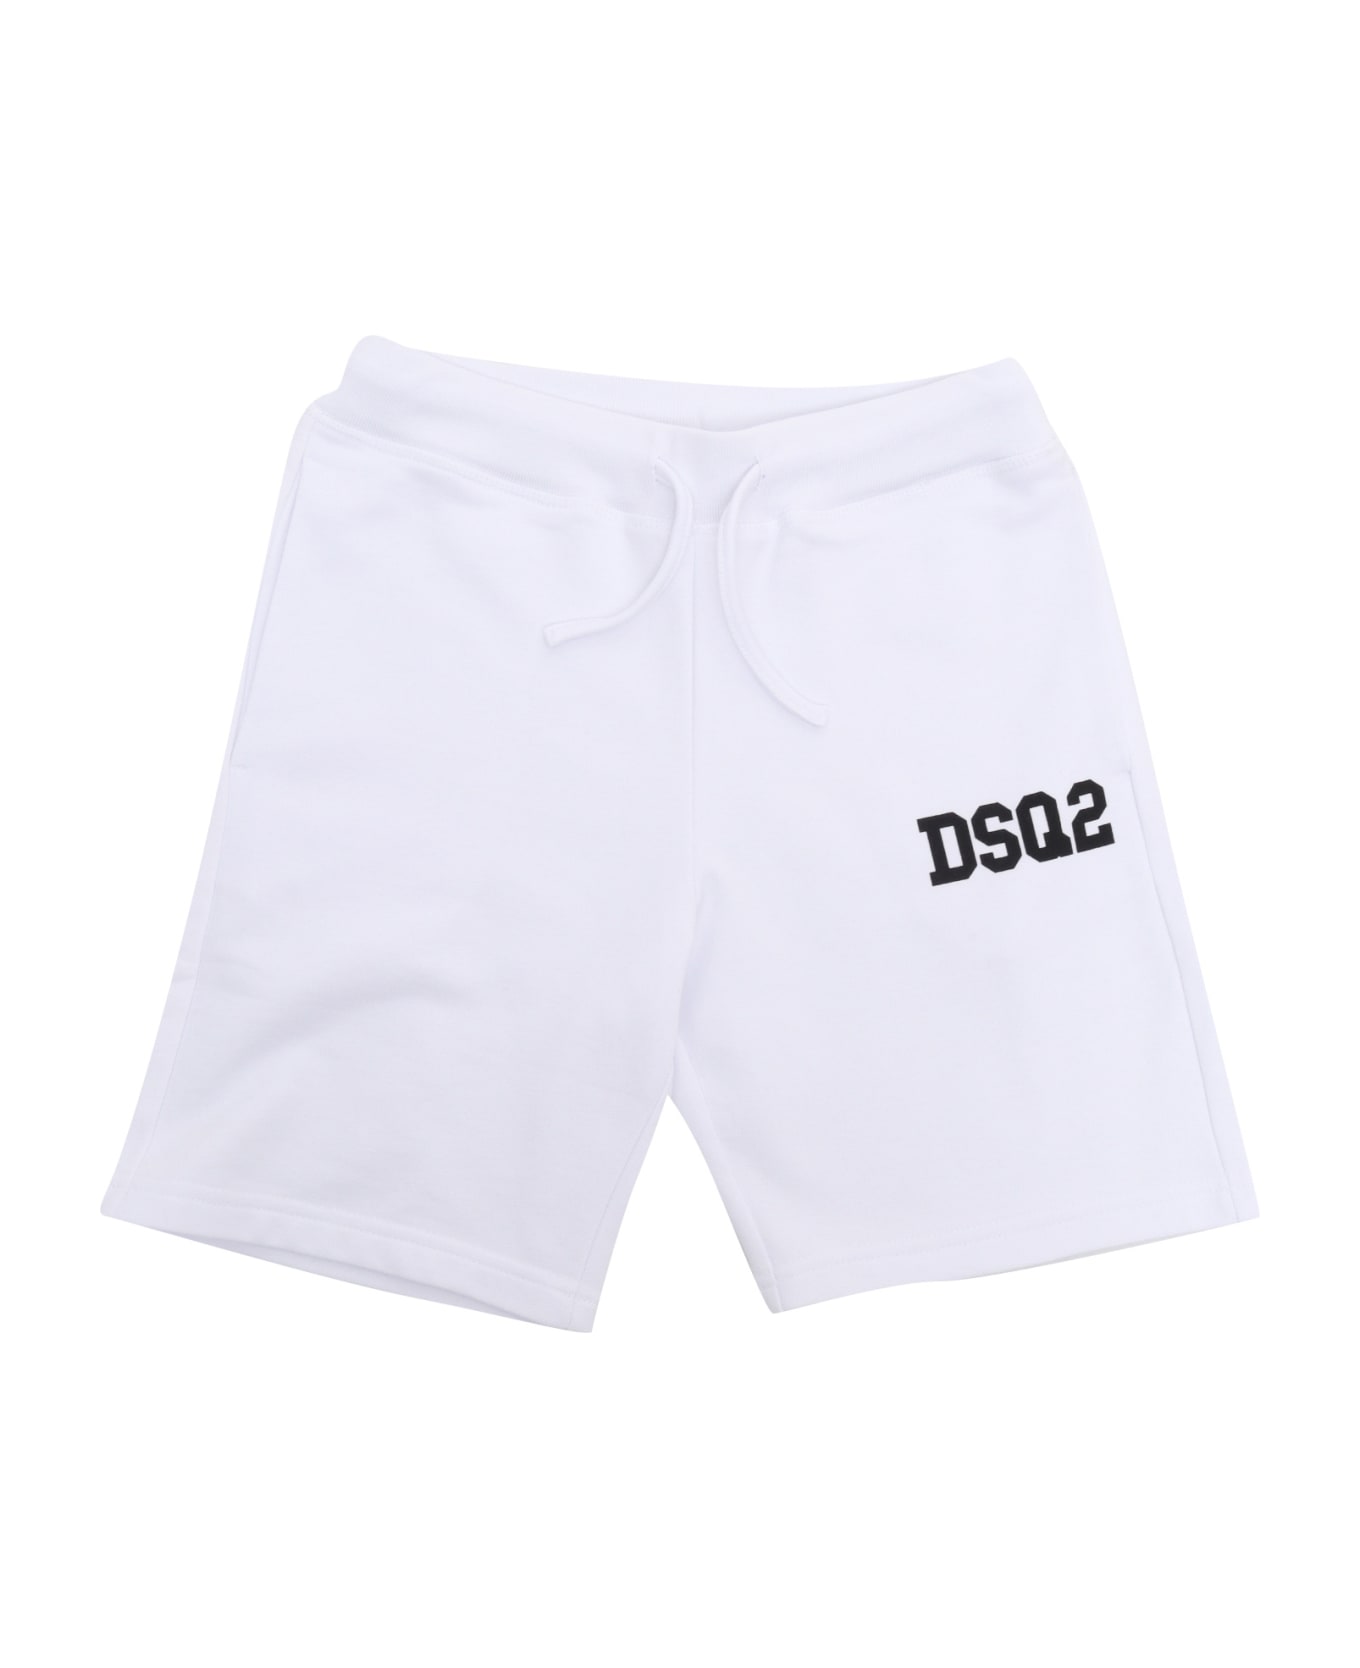 Dsquared2 Bermuda Shorts - WHITE